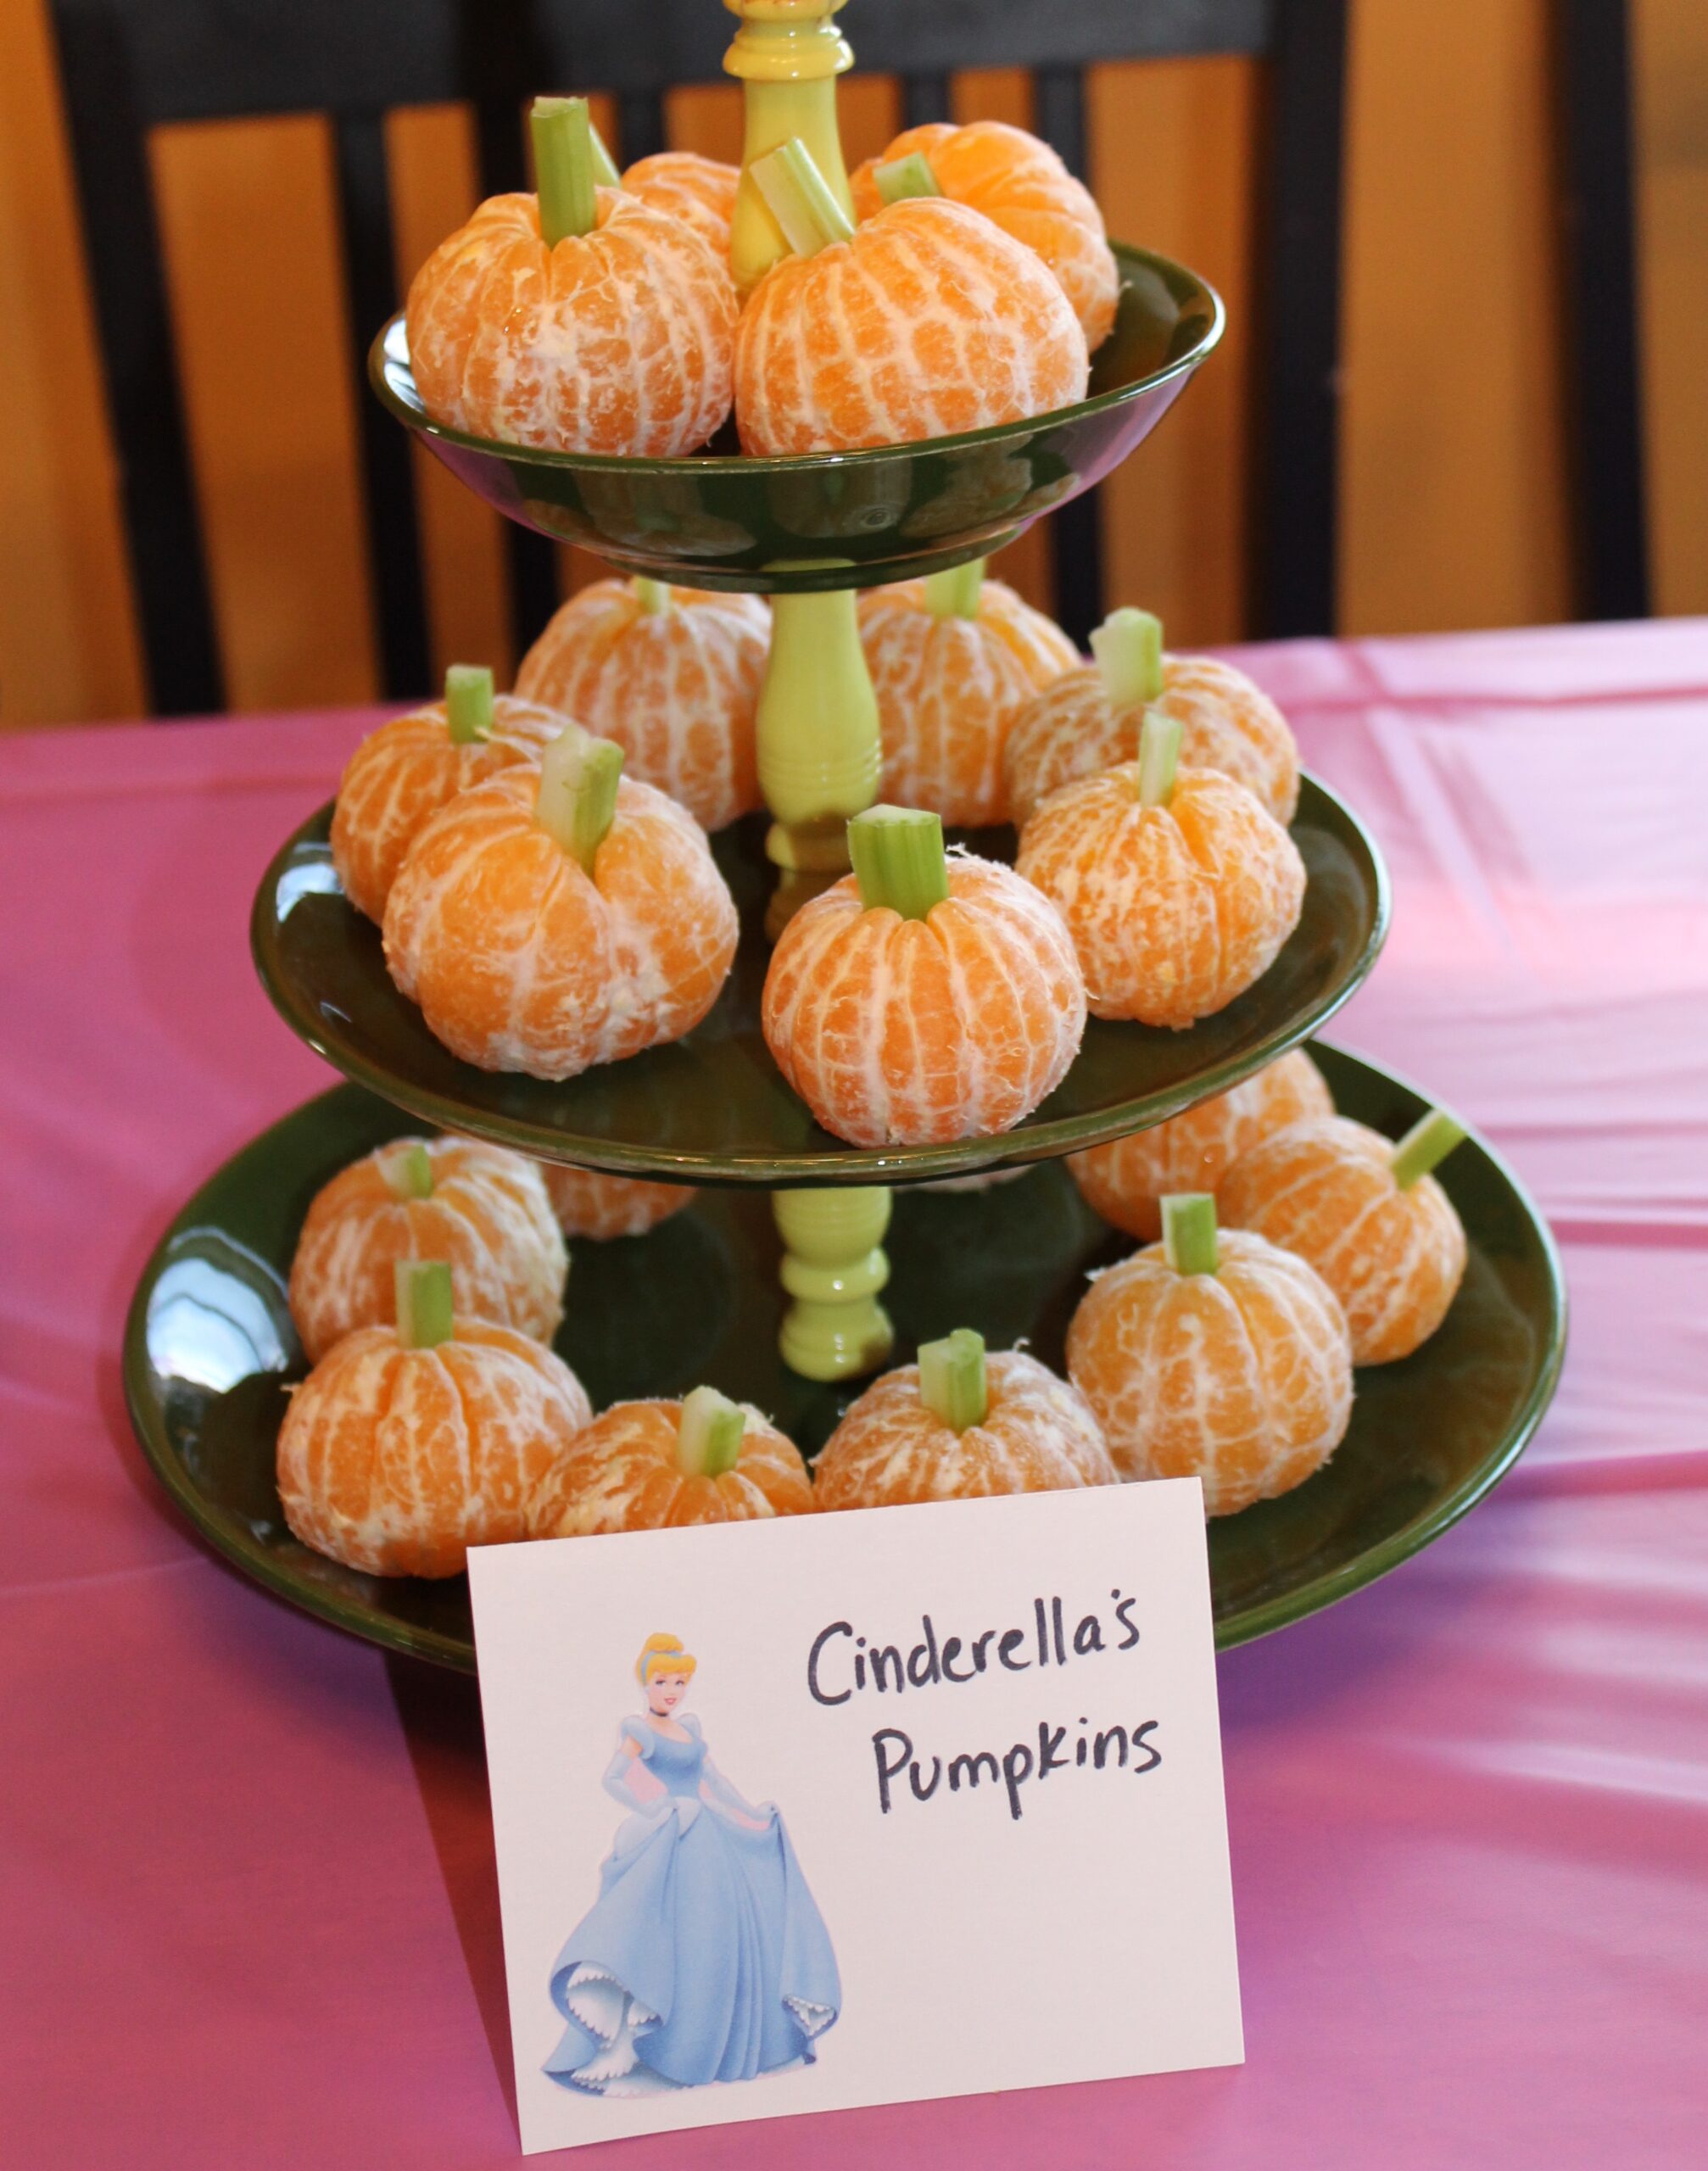 Cinderella's Pumpkins